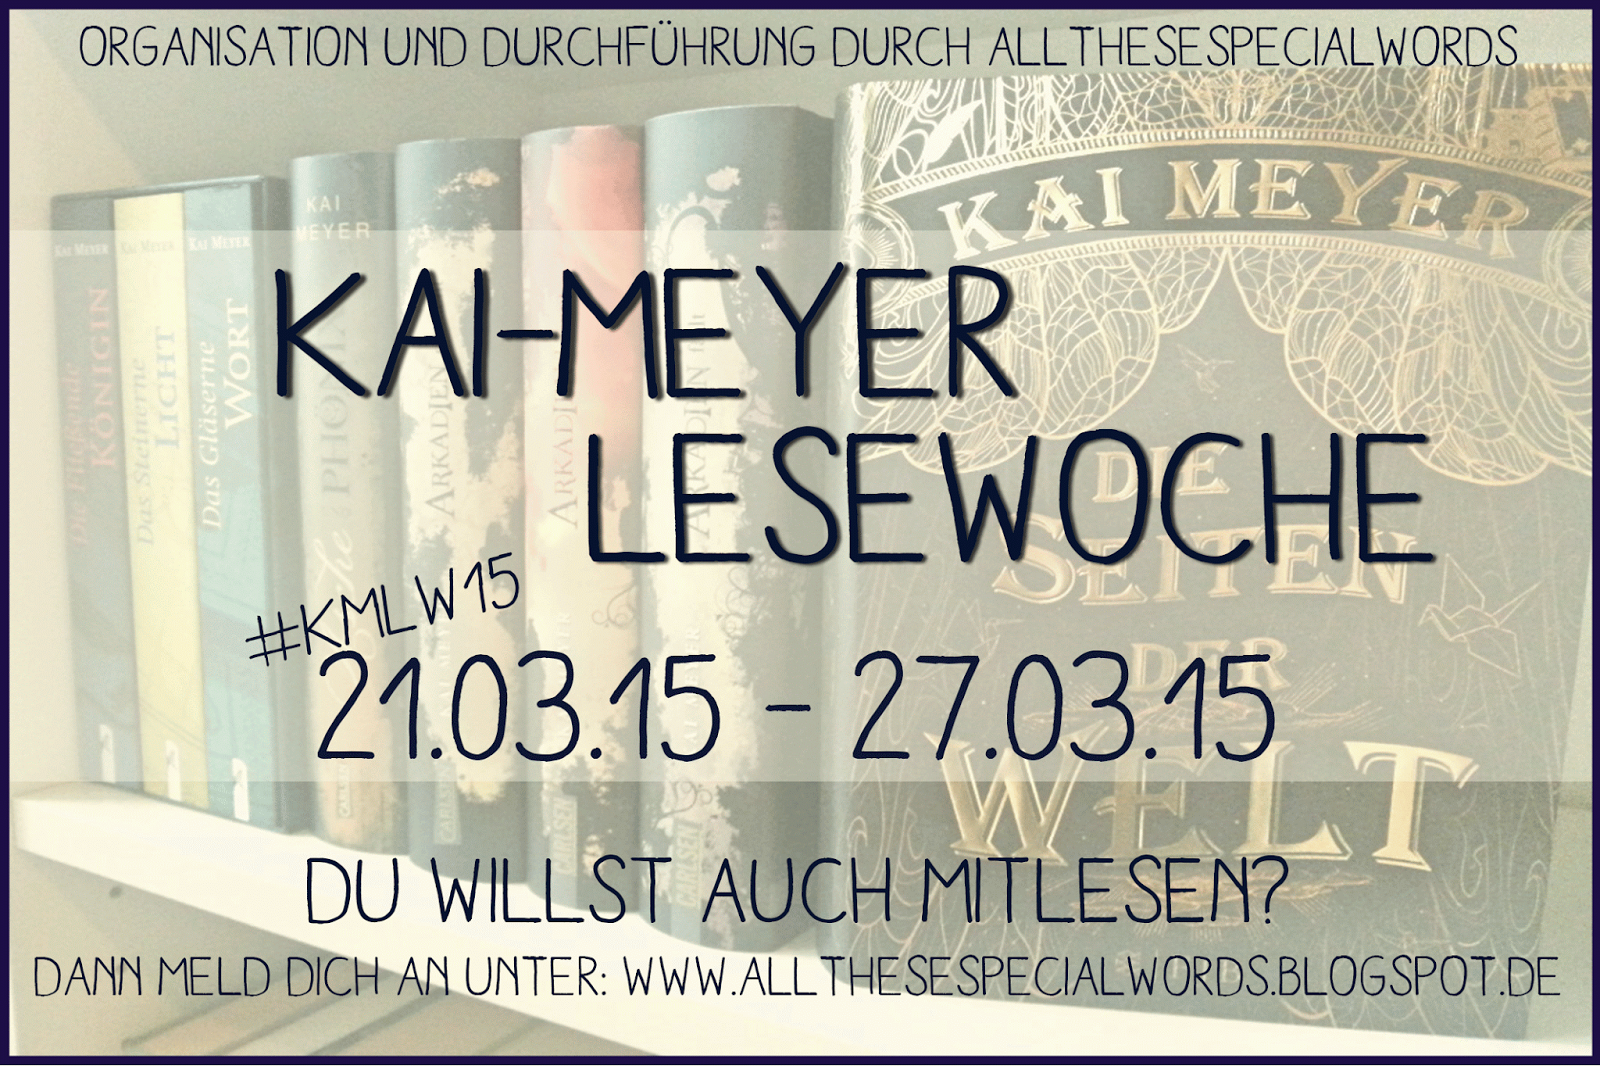 http://allthesespecialwords.blogspot.de/2015/03/lesewoche-kai-meyer-die-aufgaben-und.html